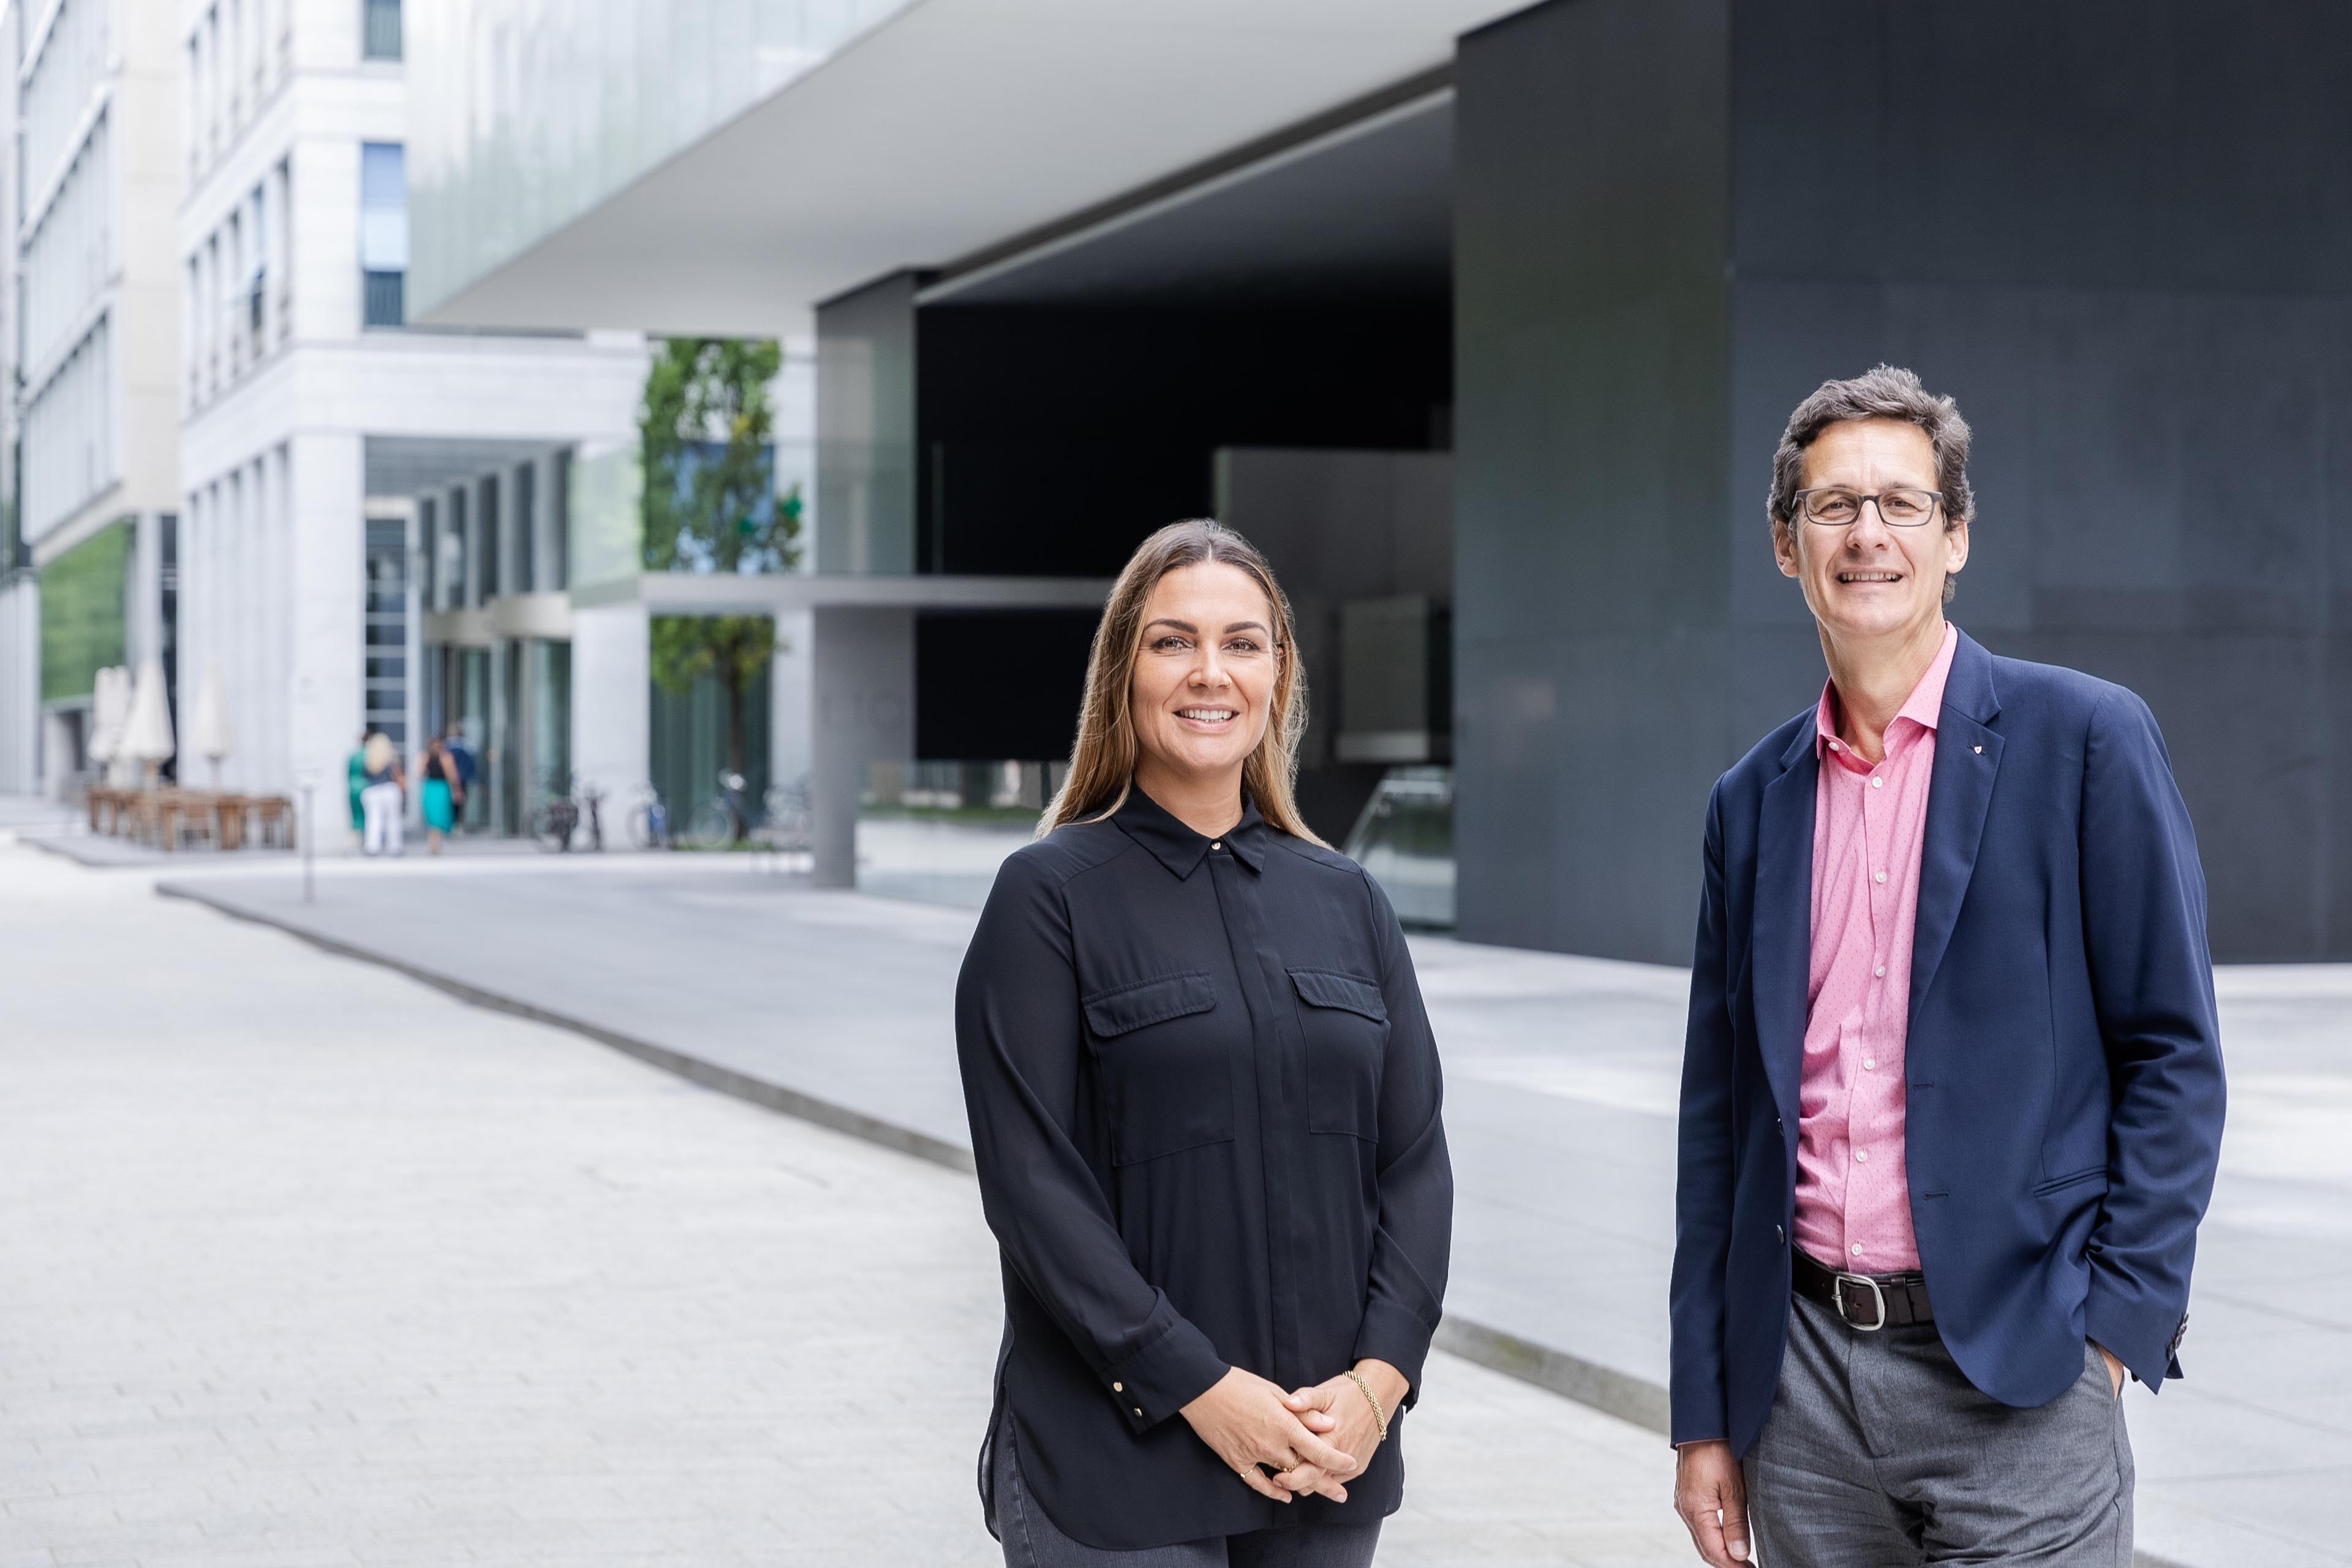 Isabel Dalli, Global Head Sponsoring & Donations chez Novartis et Markus Mader, directeur de la Croix-Rouge suisse, se tiennent devant un bâtiment moderne et sourient à la caméra.